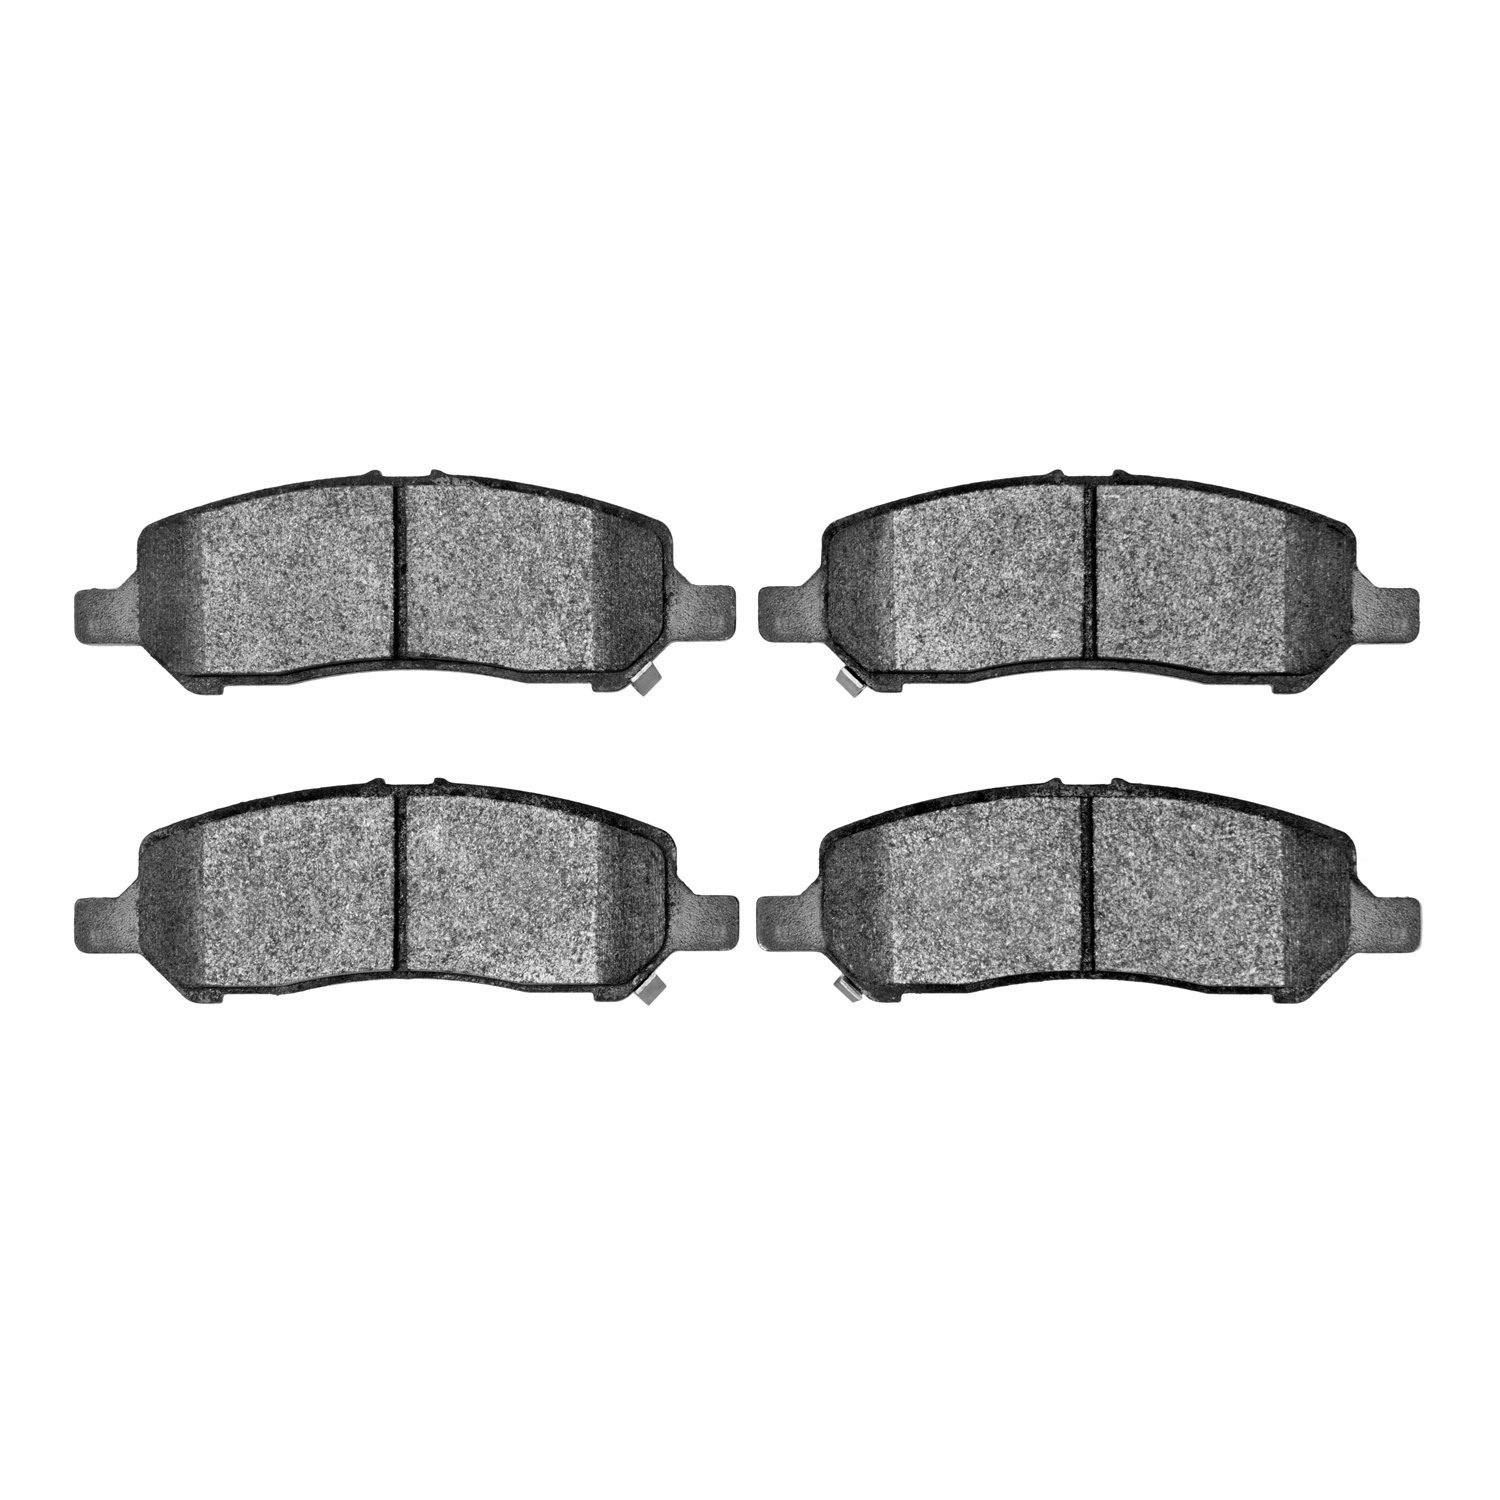 1310-1647-00 3000-Series Ceramic Brake Pads, 2013-2016 Mopar, Position: Rear